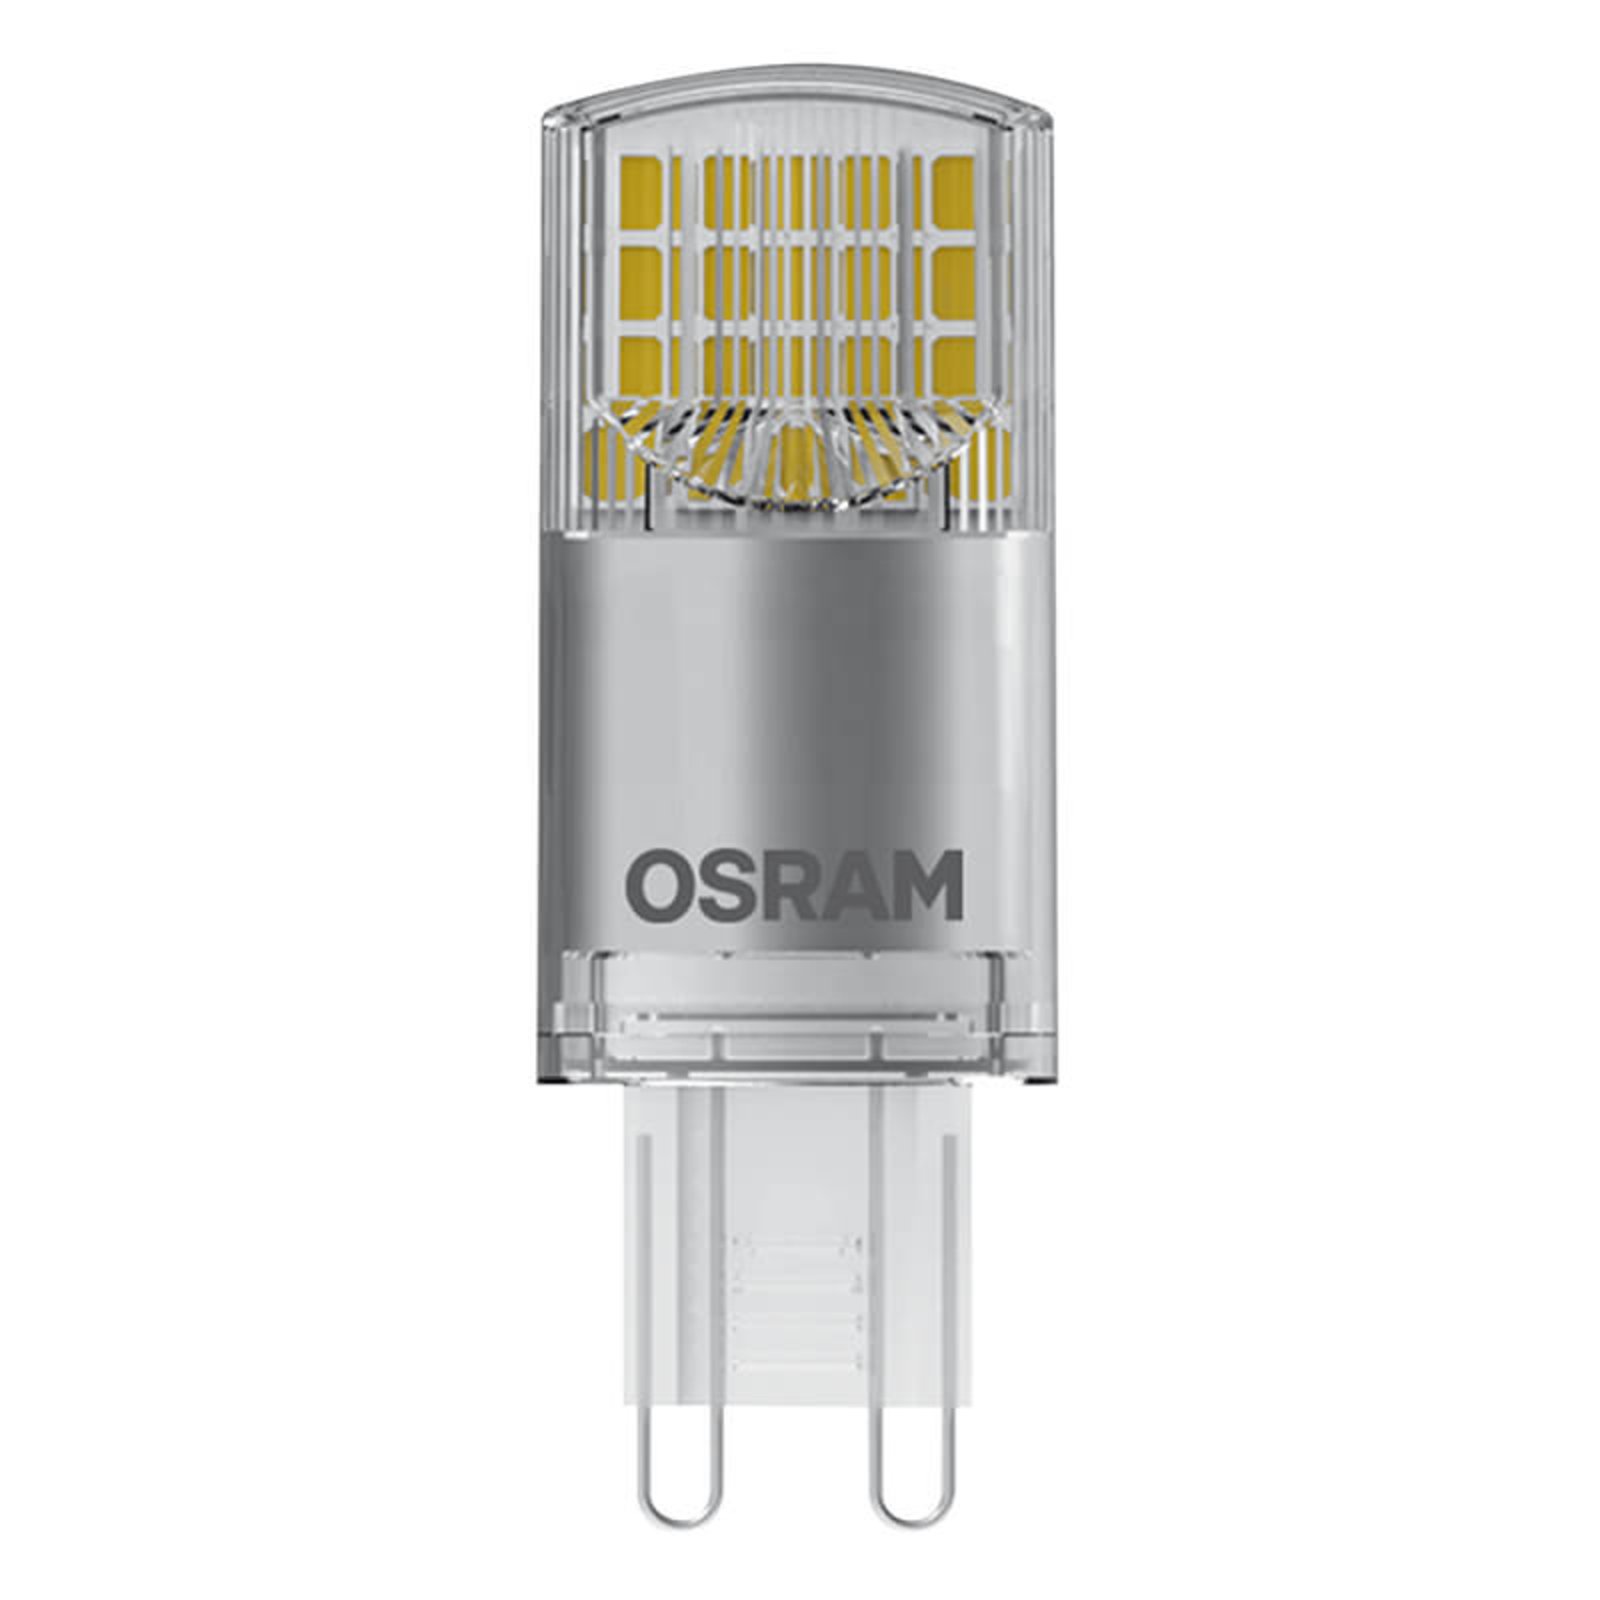 OSRAM LED-stiftpære G9 3,8 W, varmhvit, 470 lm